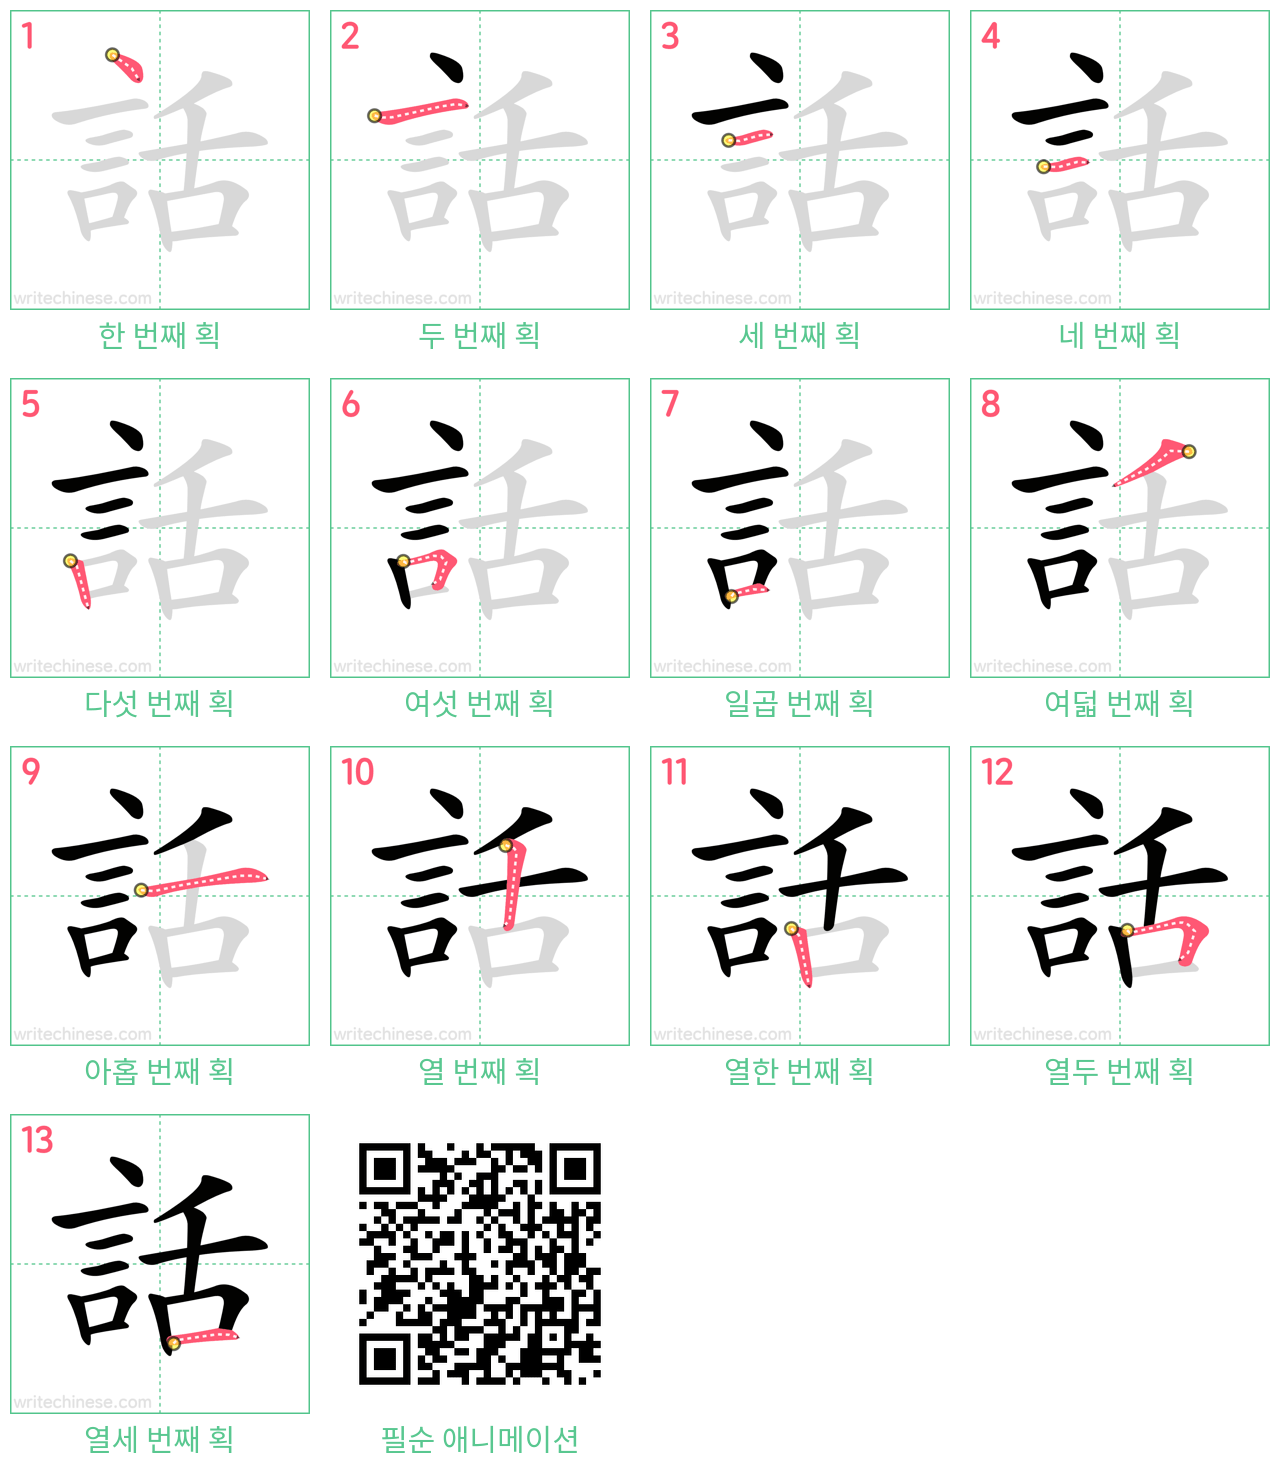 話 step-by-step stroke order diagrams